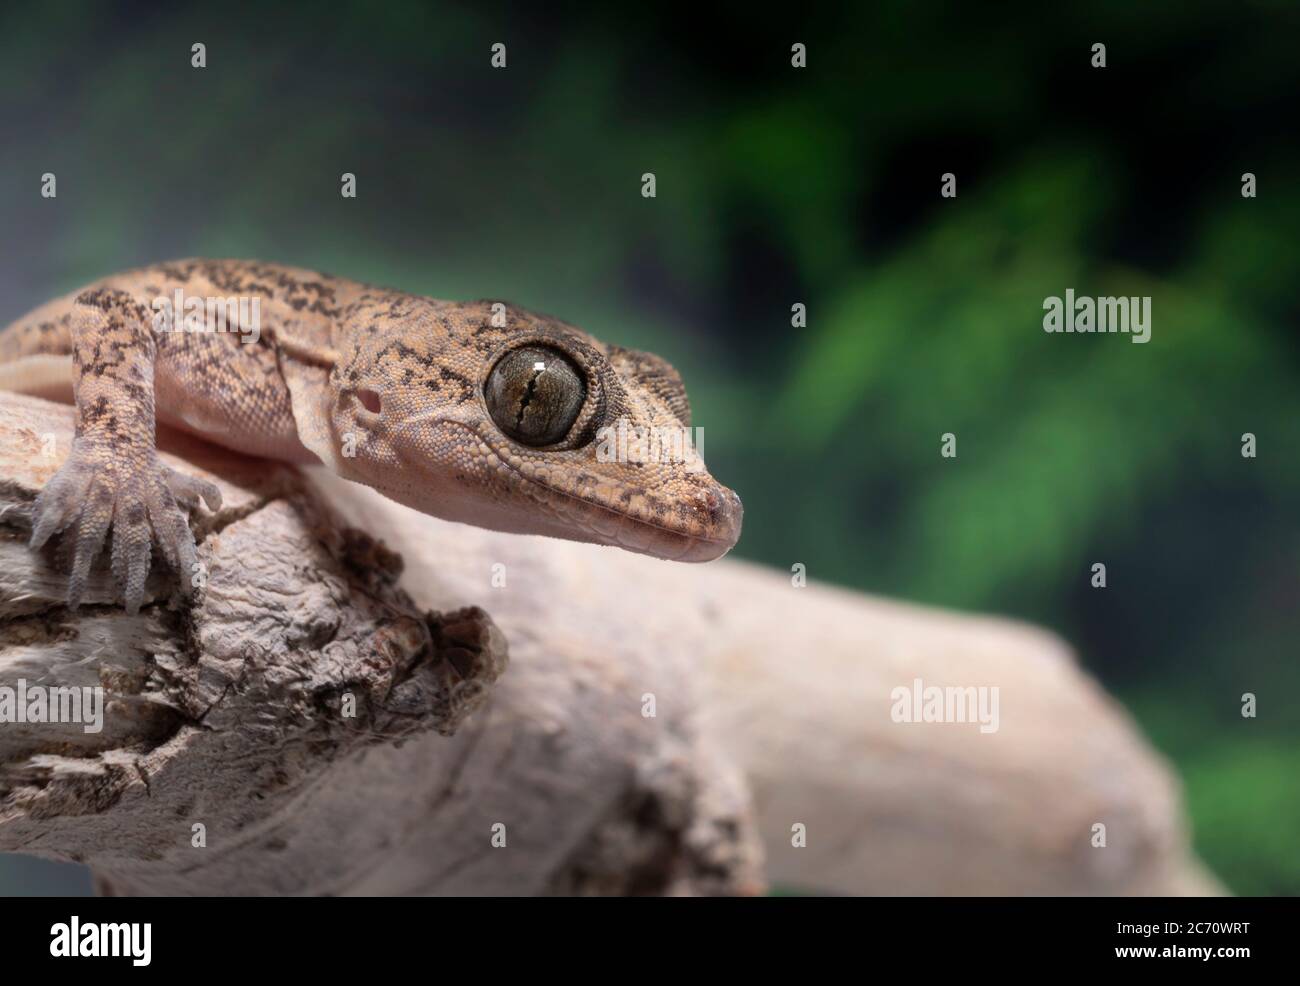 Imagen de un hogar común Gecko en una sucursal con un helecho verde en el fondo Foto de stock